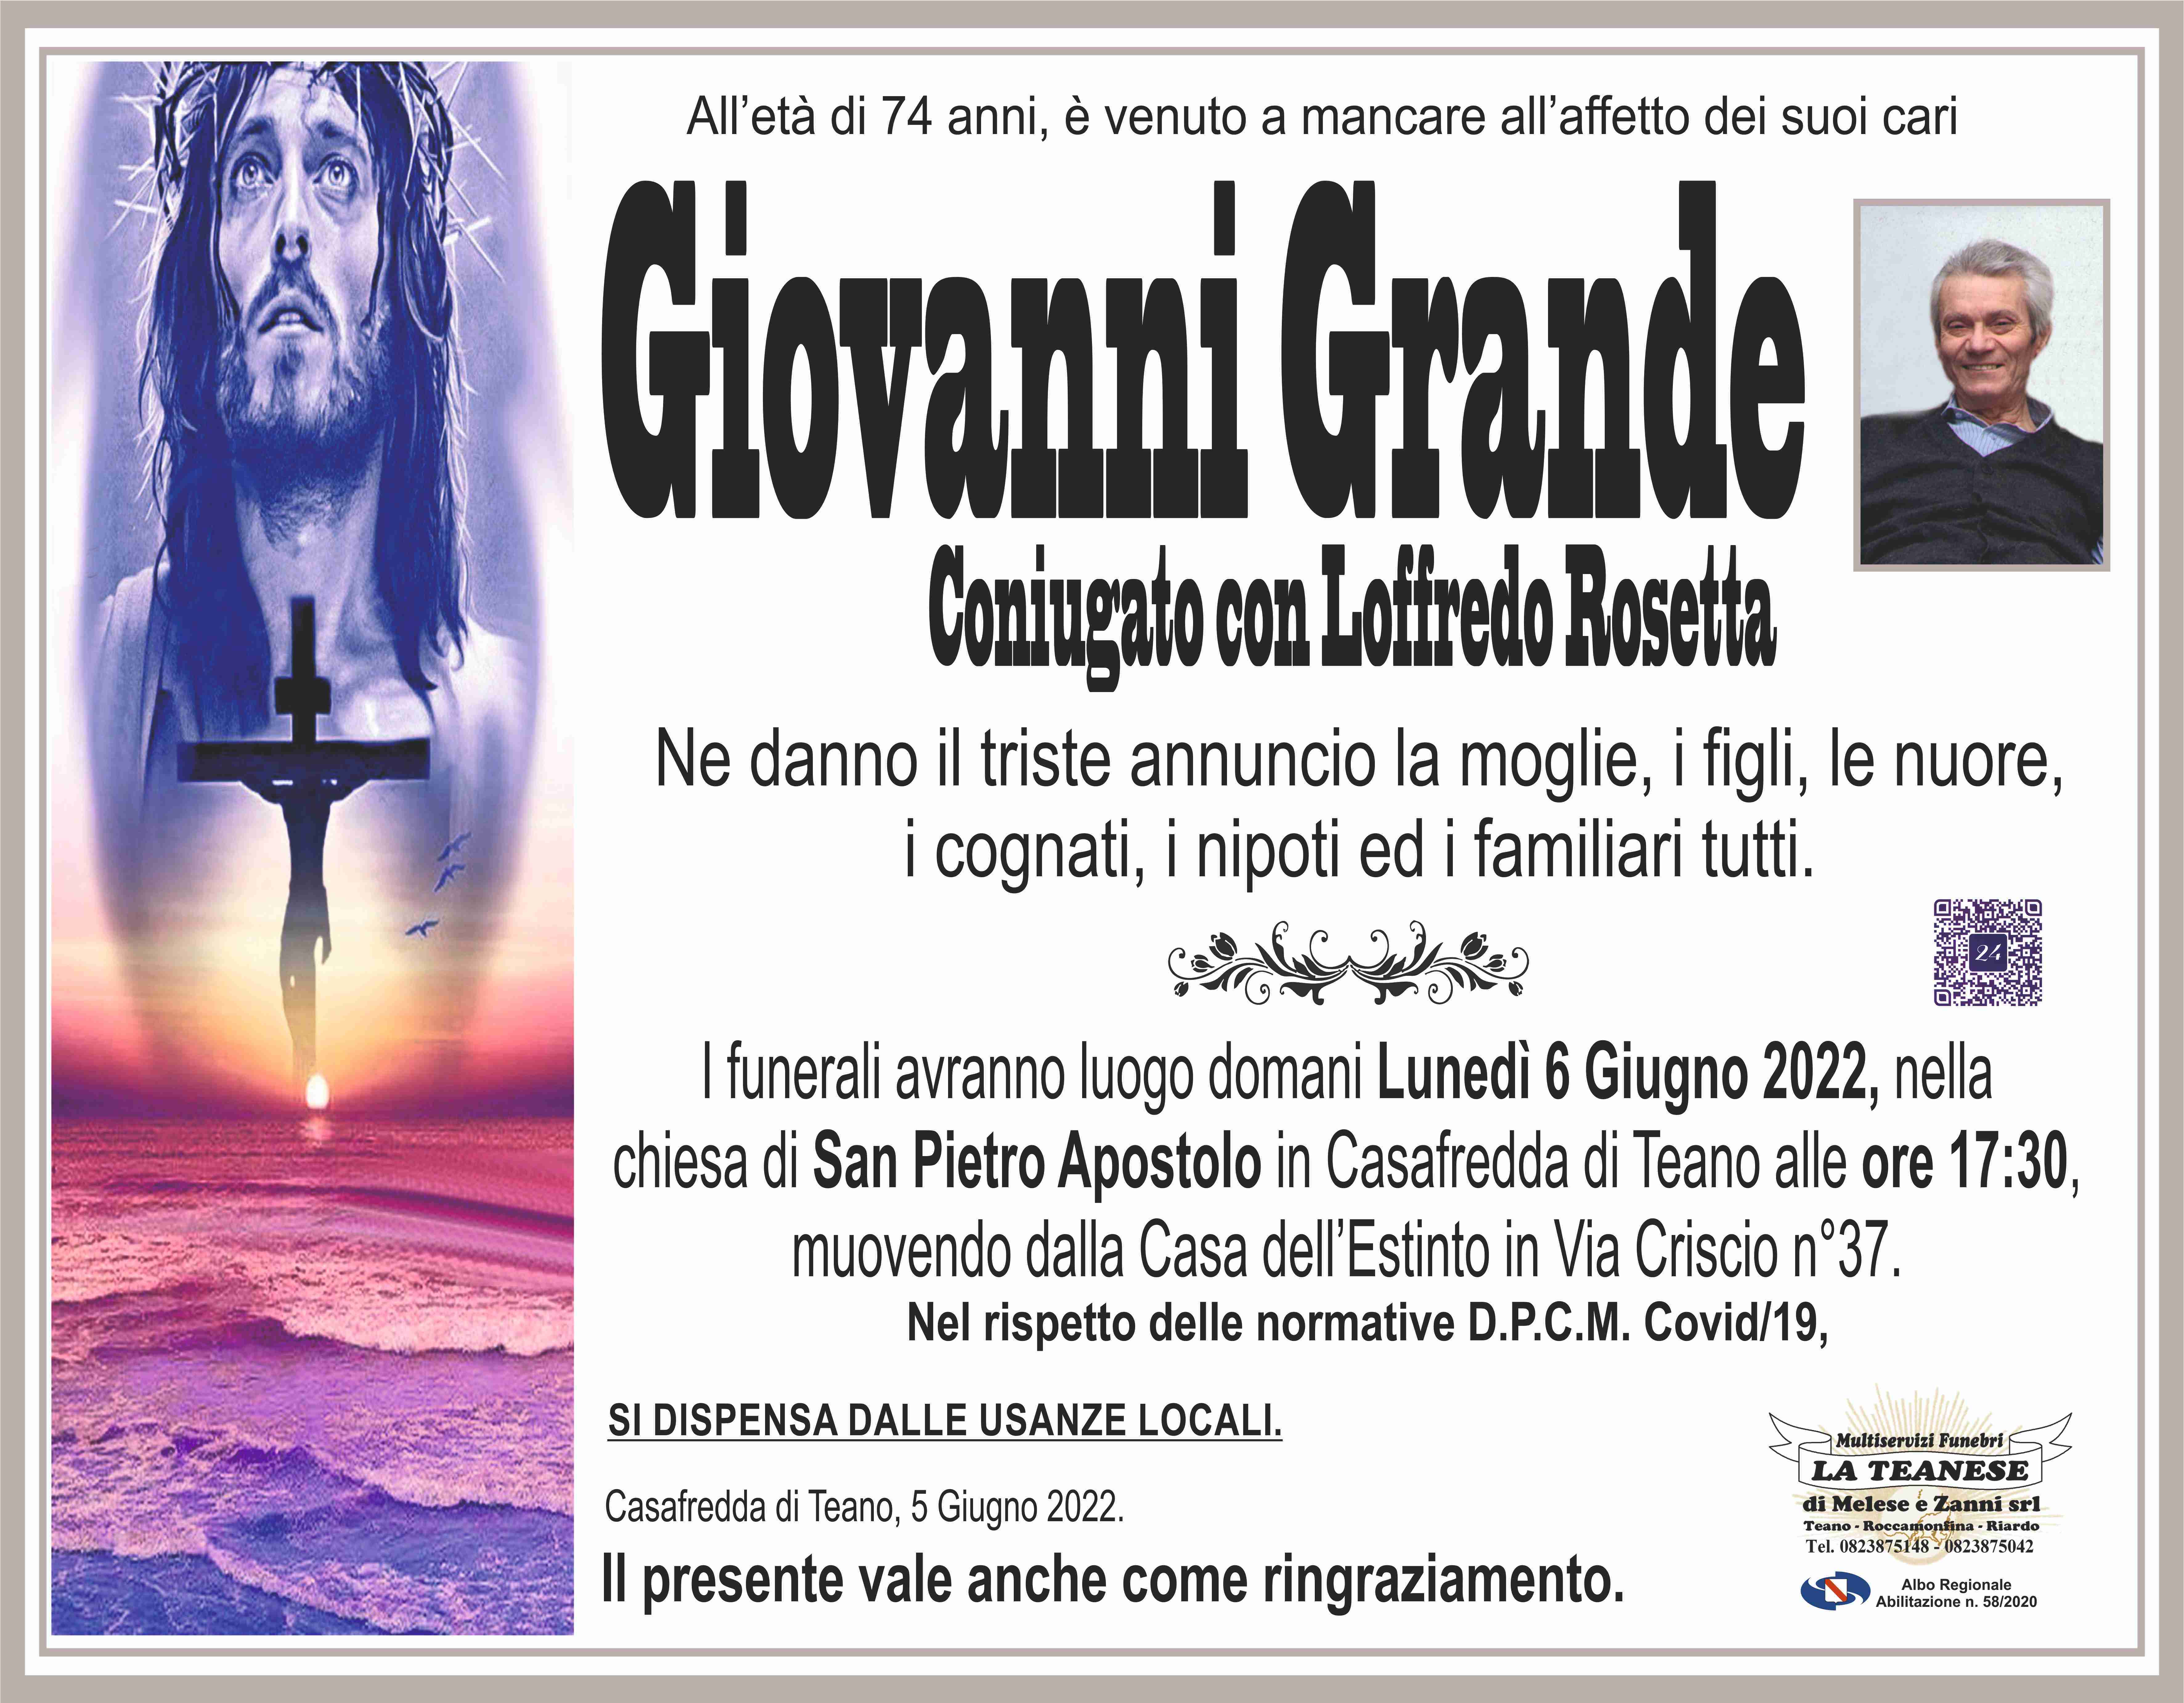 Giovanni Grande